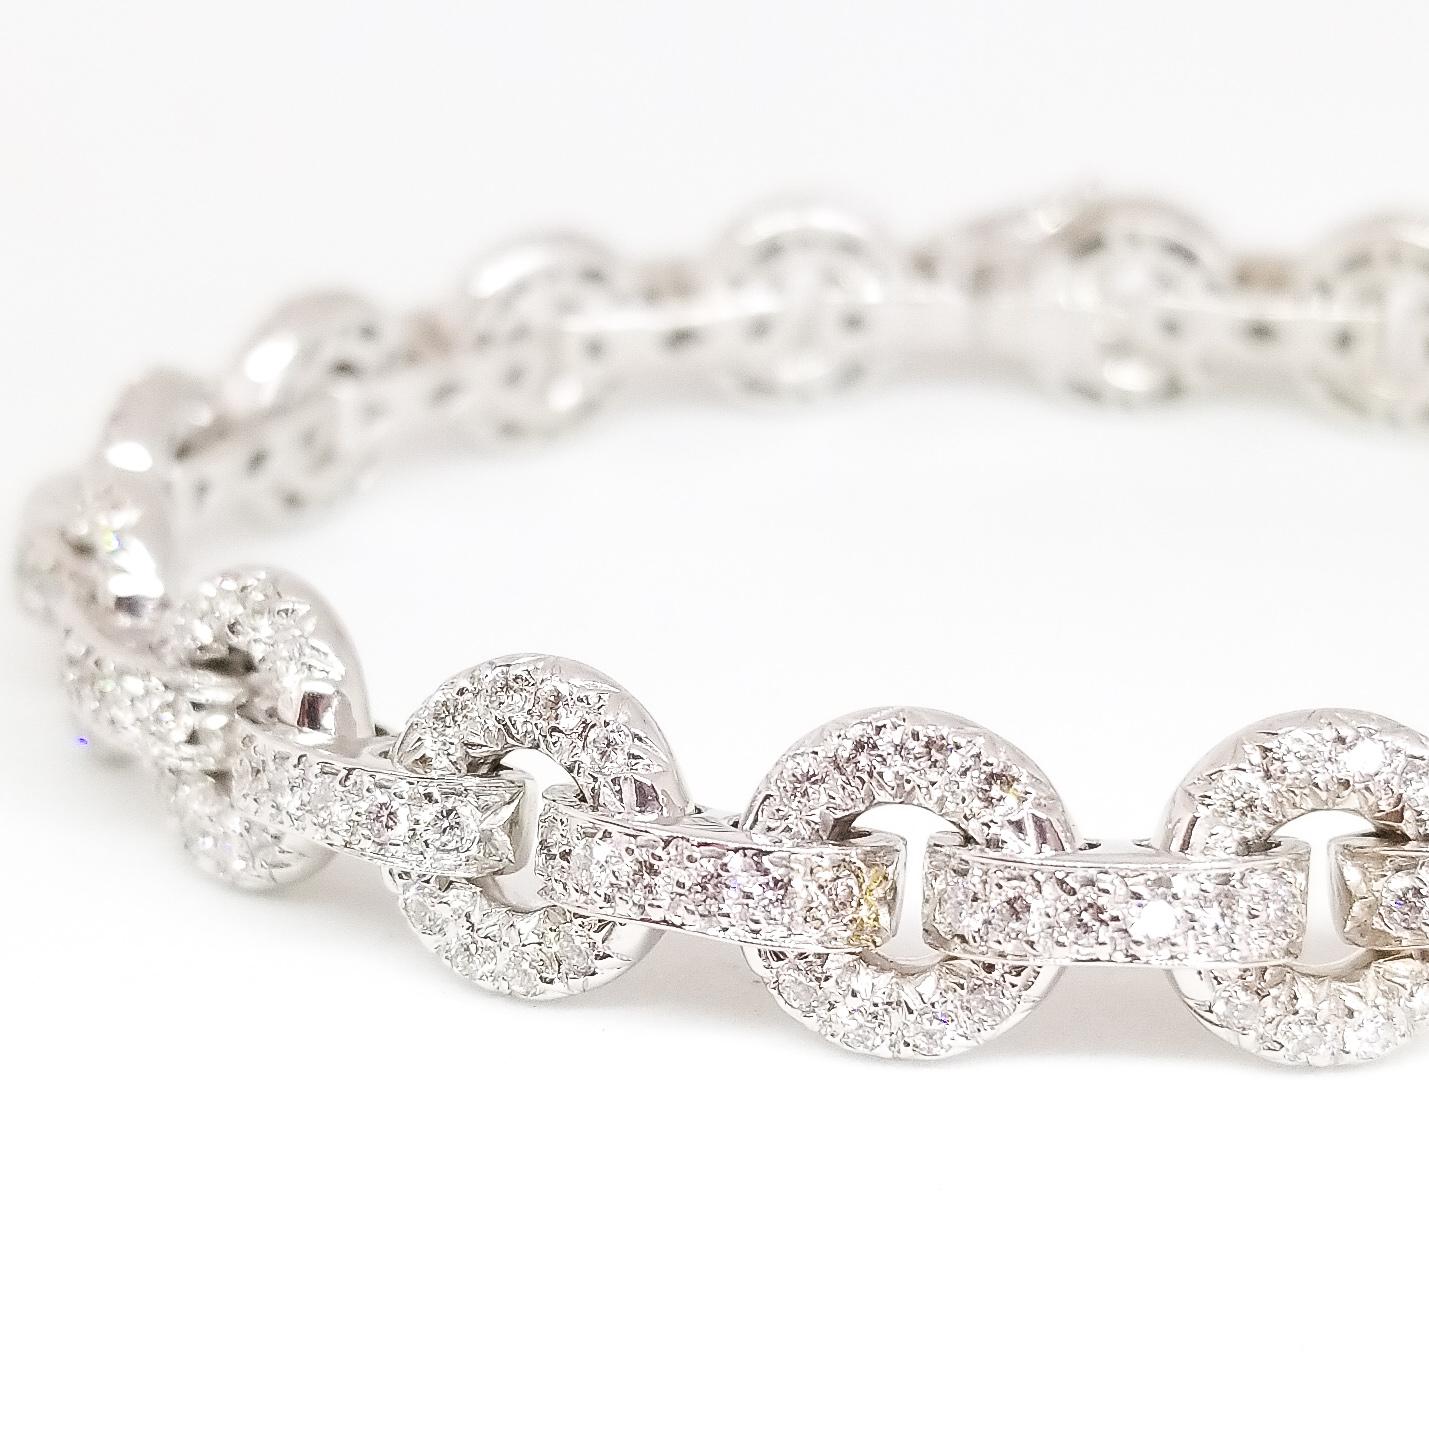 Le bracelet tennis en diamants ronds et brillants présente des diamants ronds et brillants d'un poids total de 5,50 carats sertis dans des maillons circulaires et des barrettes autour du bracelet  l'ensemble du bracelet. Les diamants sont de couleur